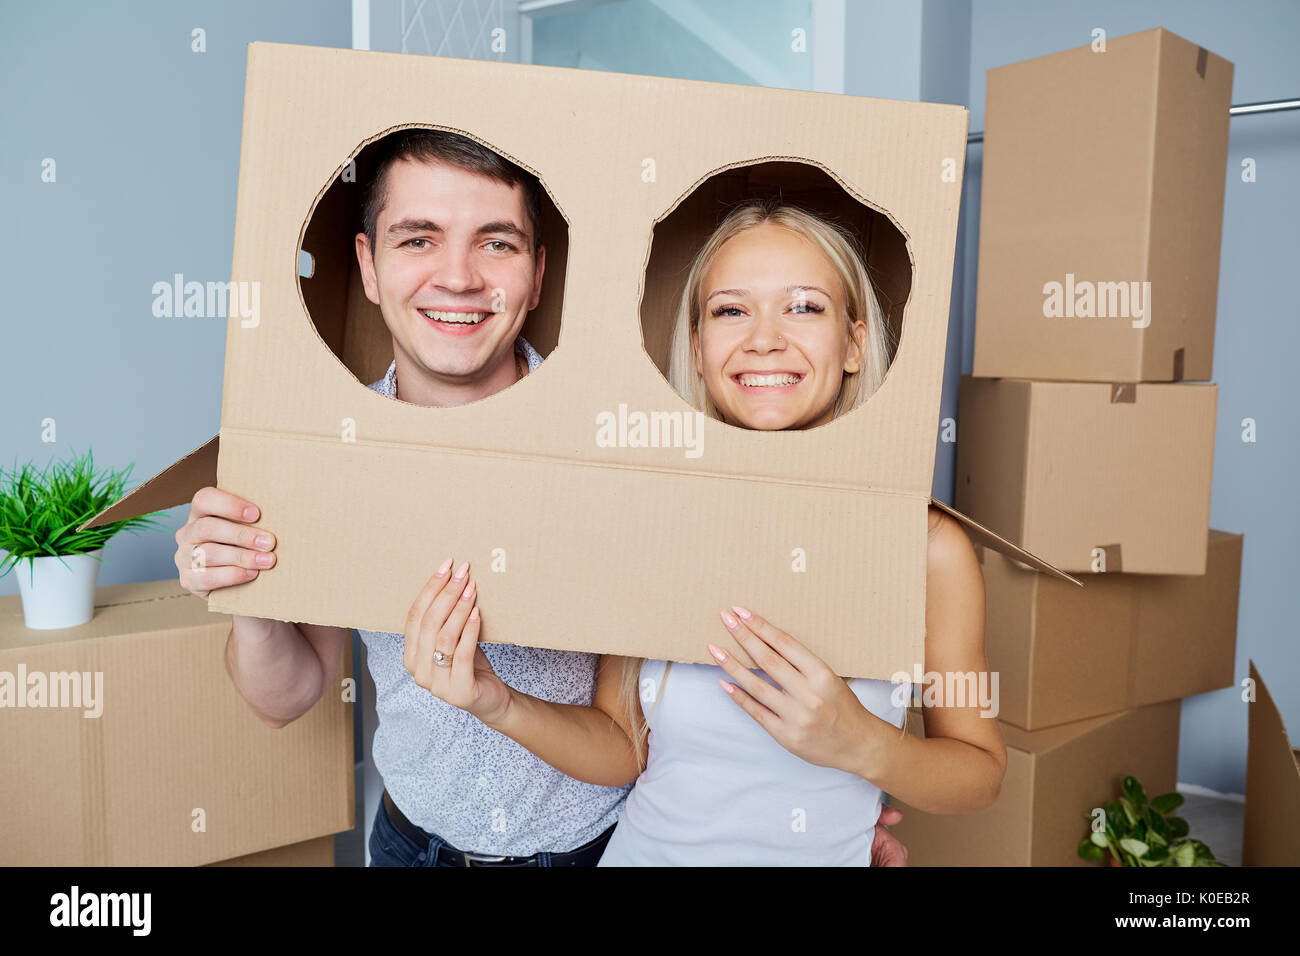 Funny giovane con una scatola sulla testa in una nuova casa. Foto Stock